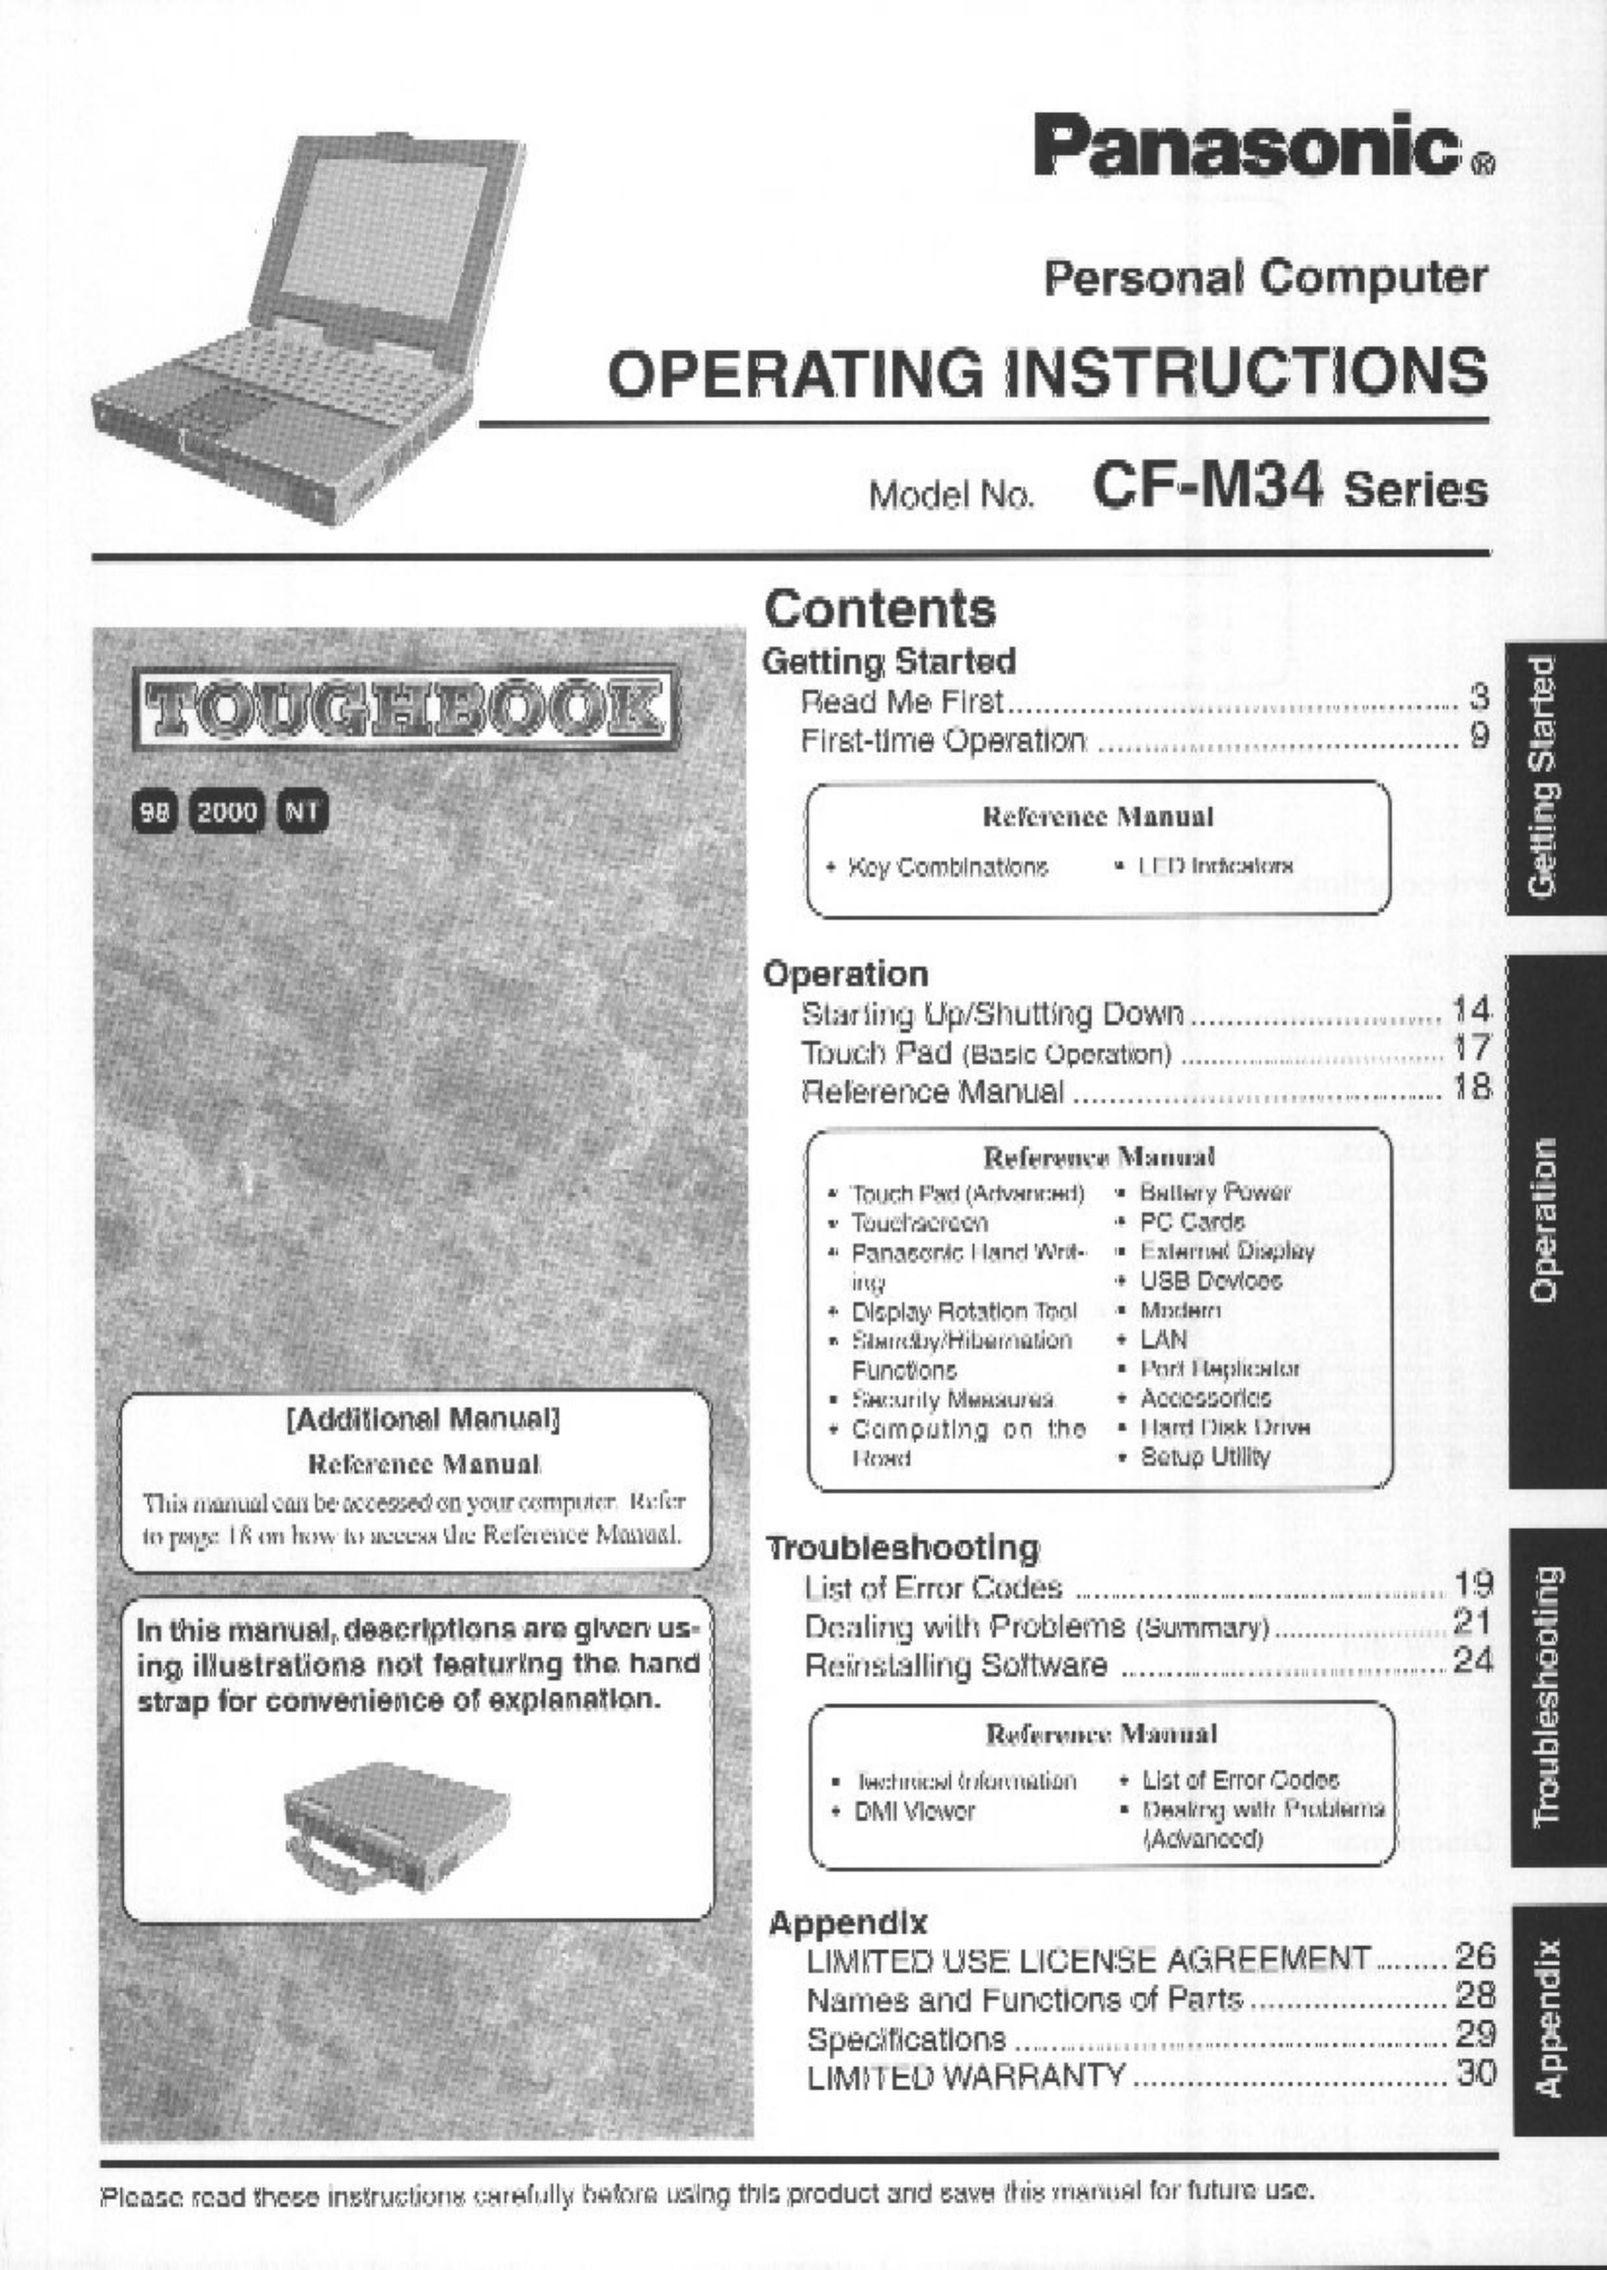 Panasonic CF-M34 series Personal Computer User Manual